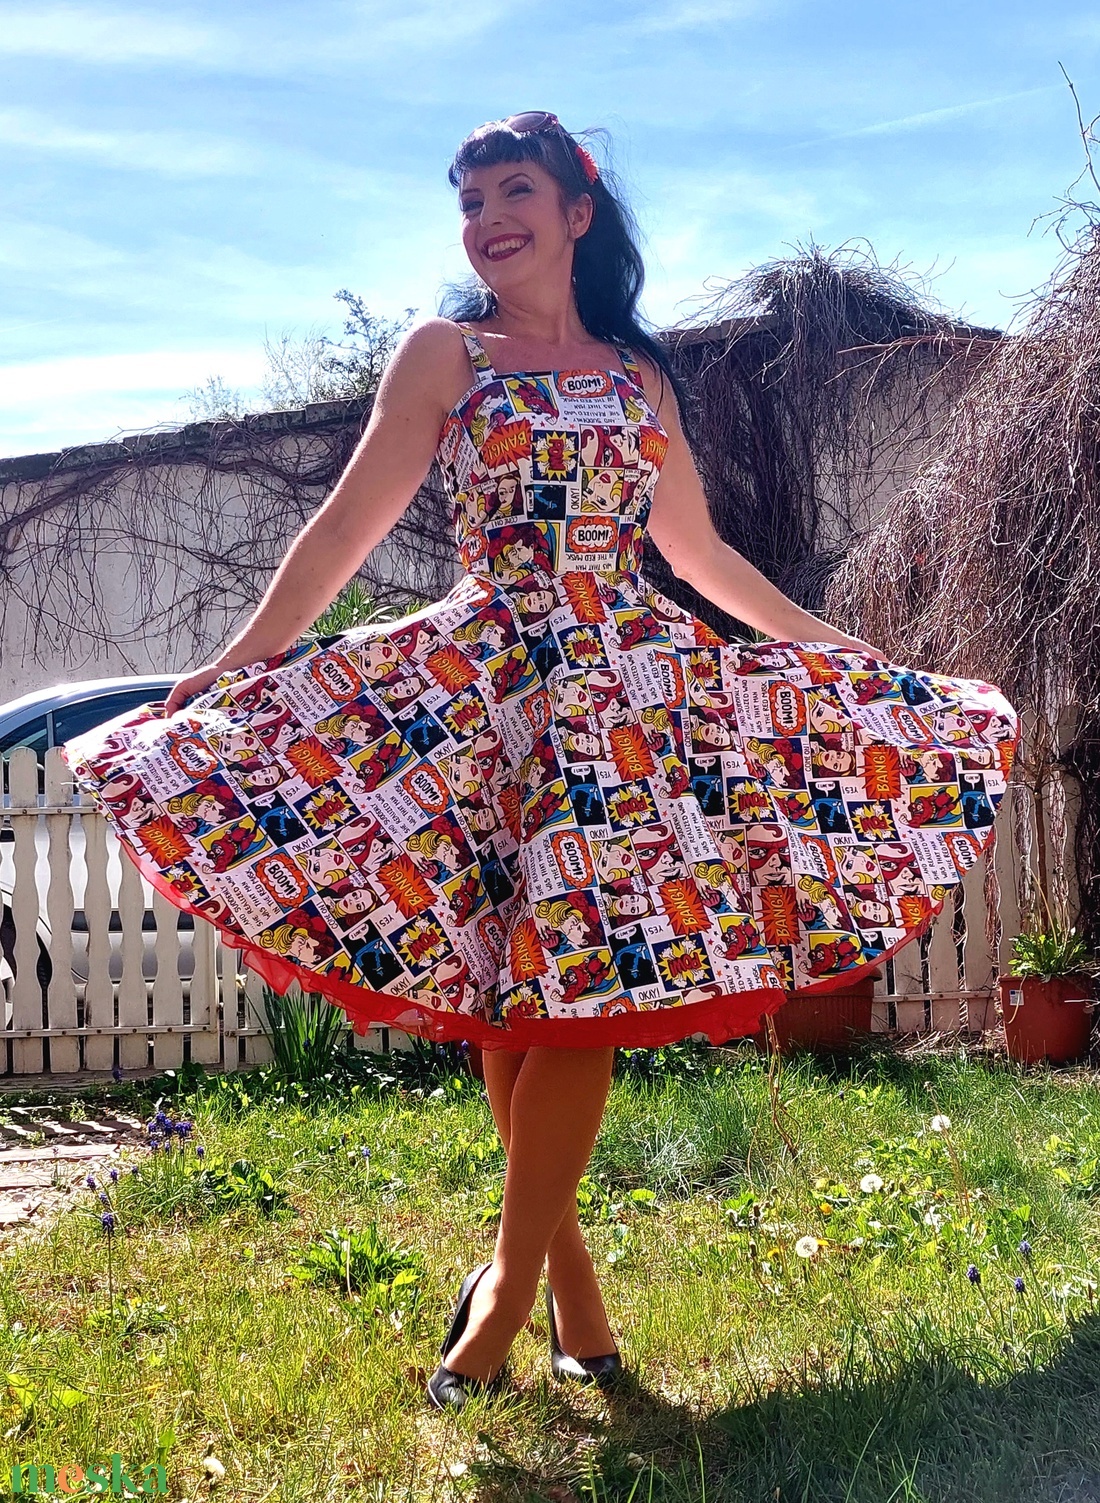 Pinup Rockabilly ruha, képregeny szuperhős  - ruha & divat - női ruha - ruha - Meska.hu